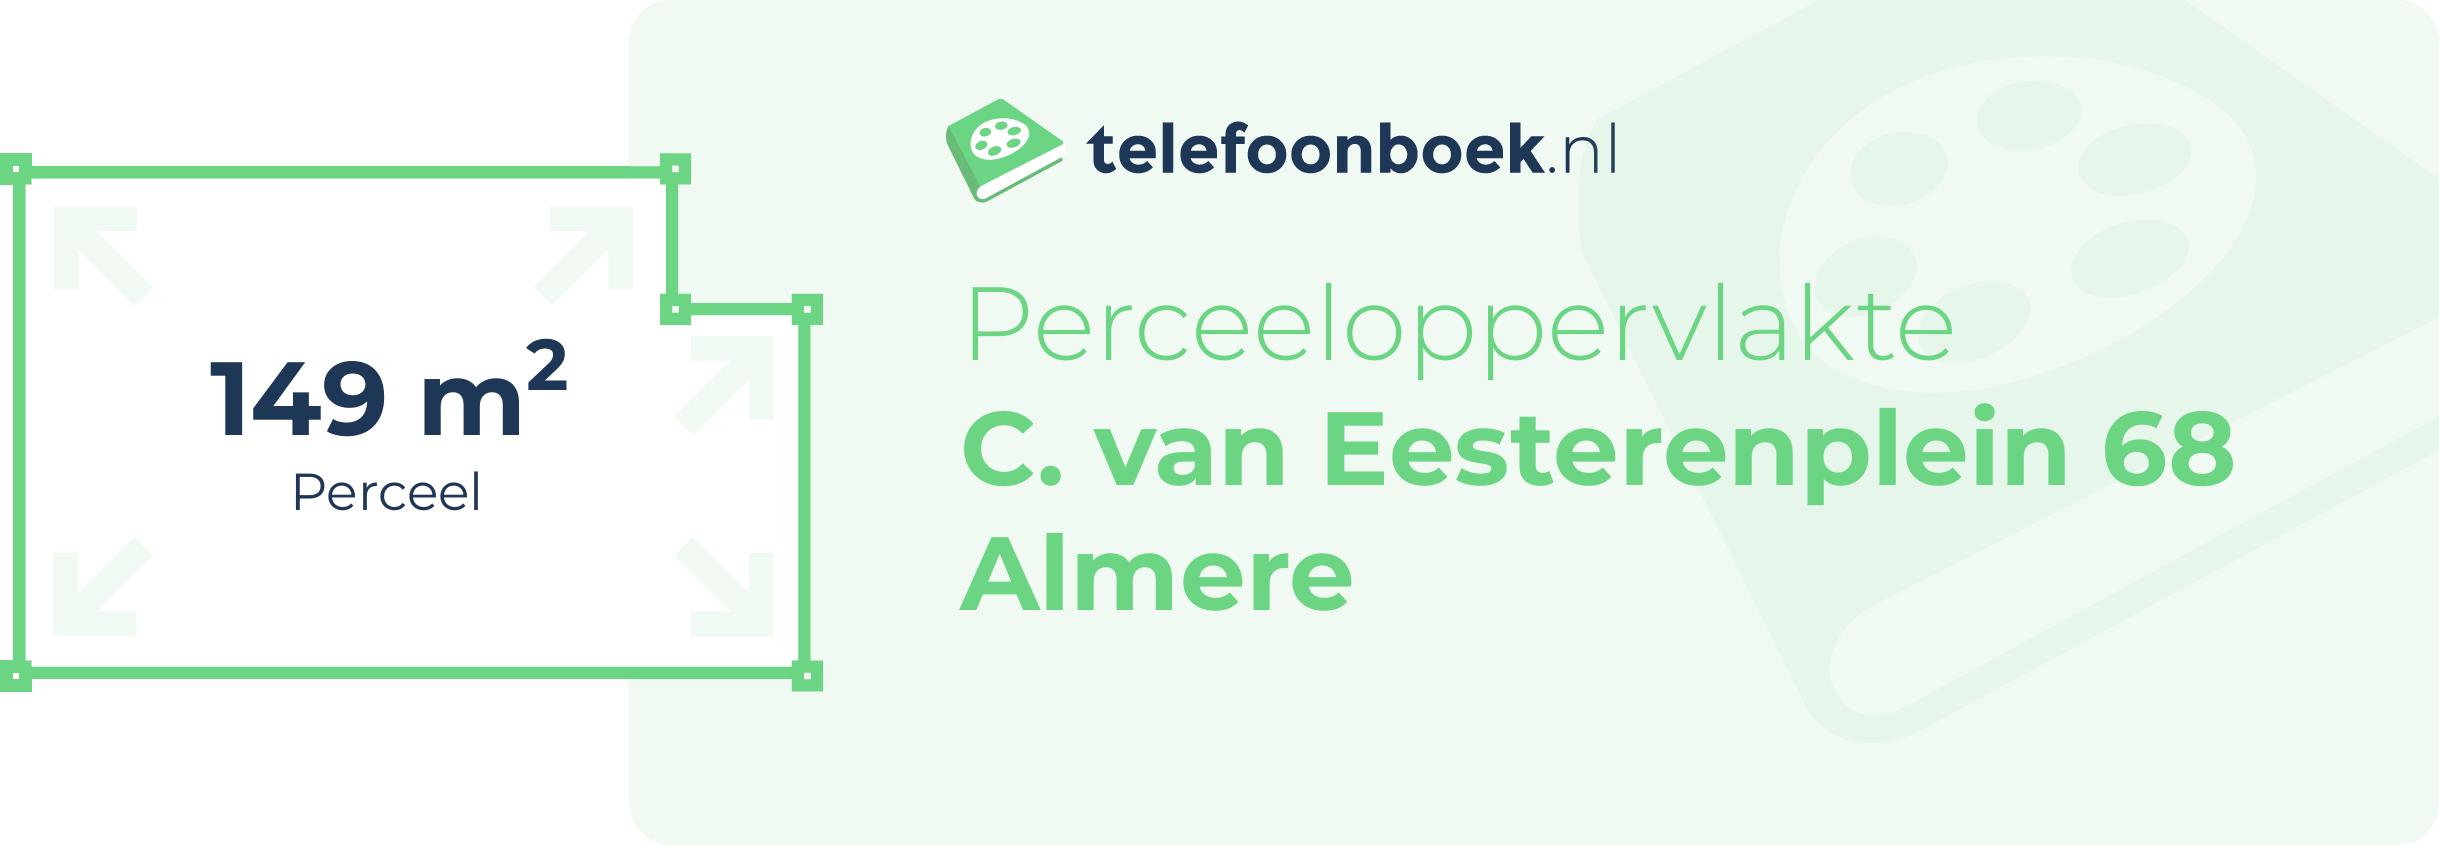 Perceeloppervlakte C. Van Eesterenplein 68 Almere